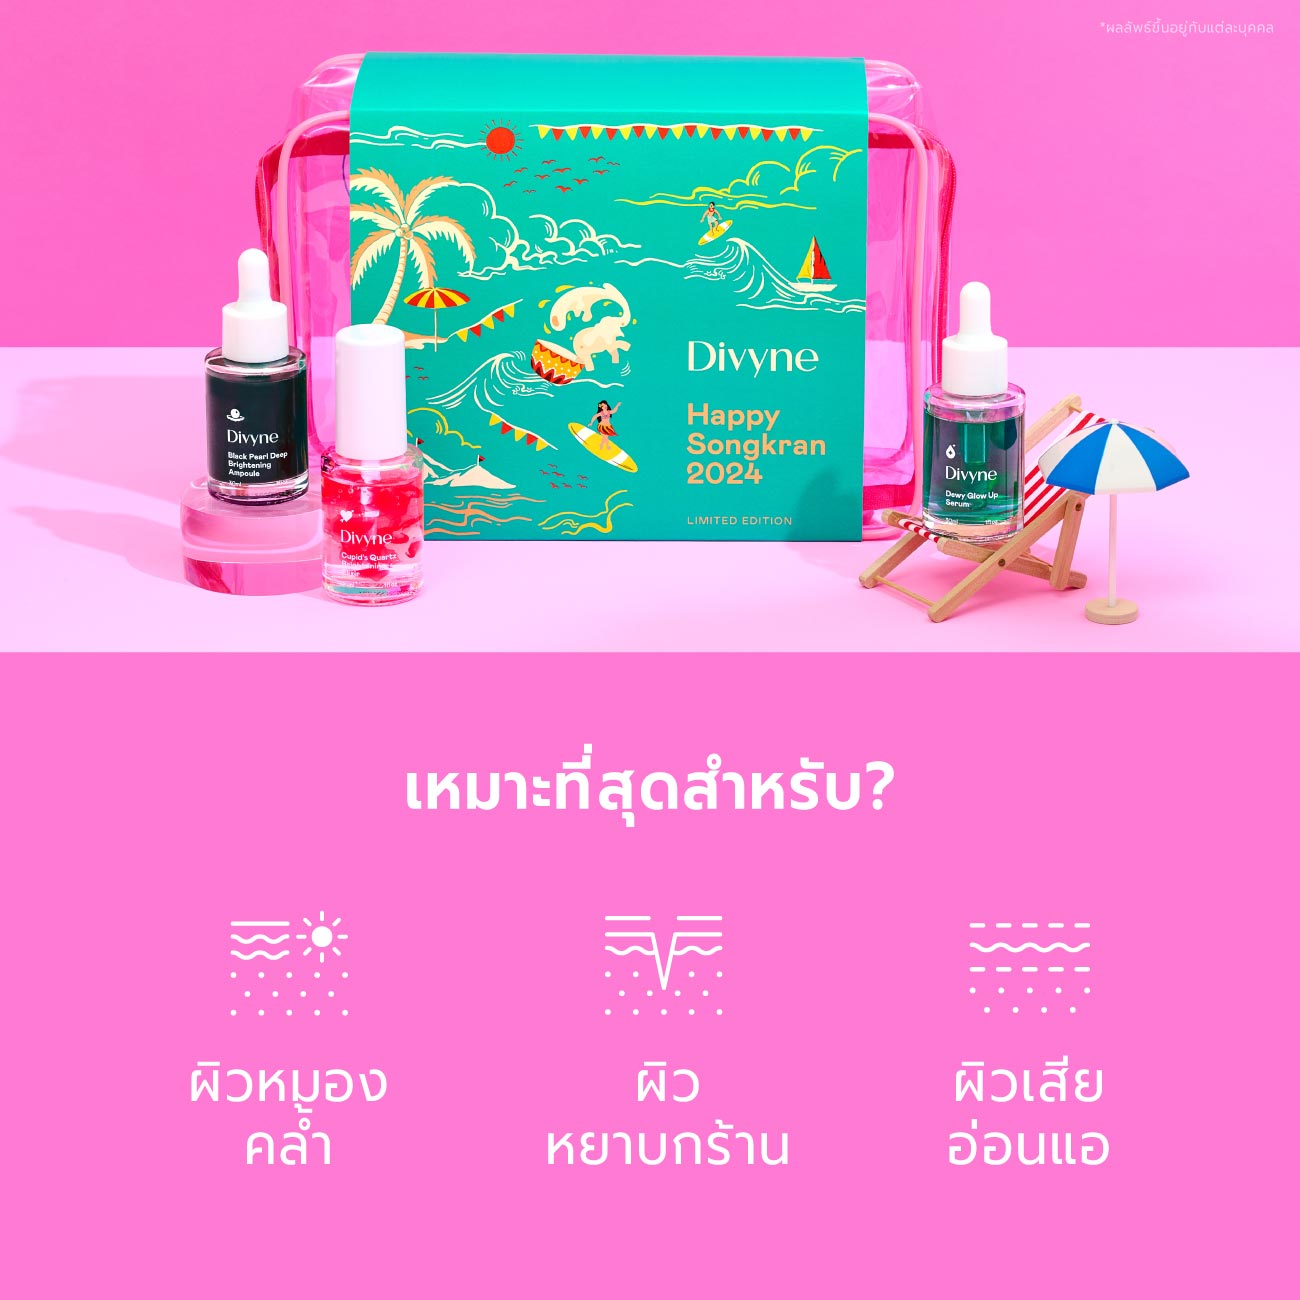 Songkran Serum Set